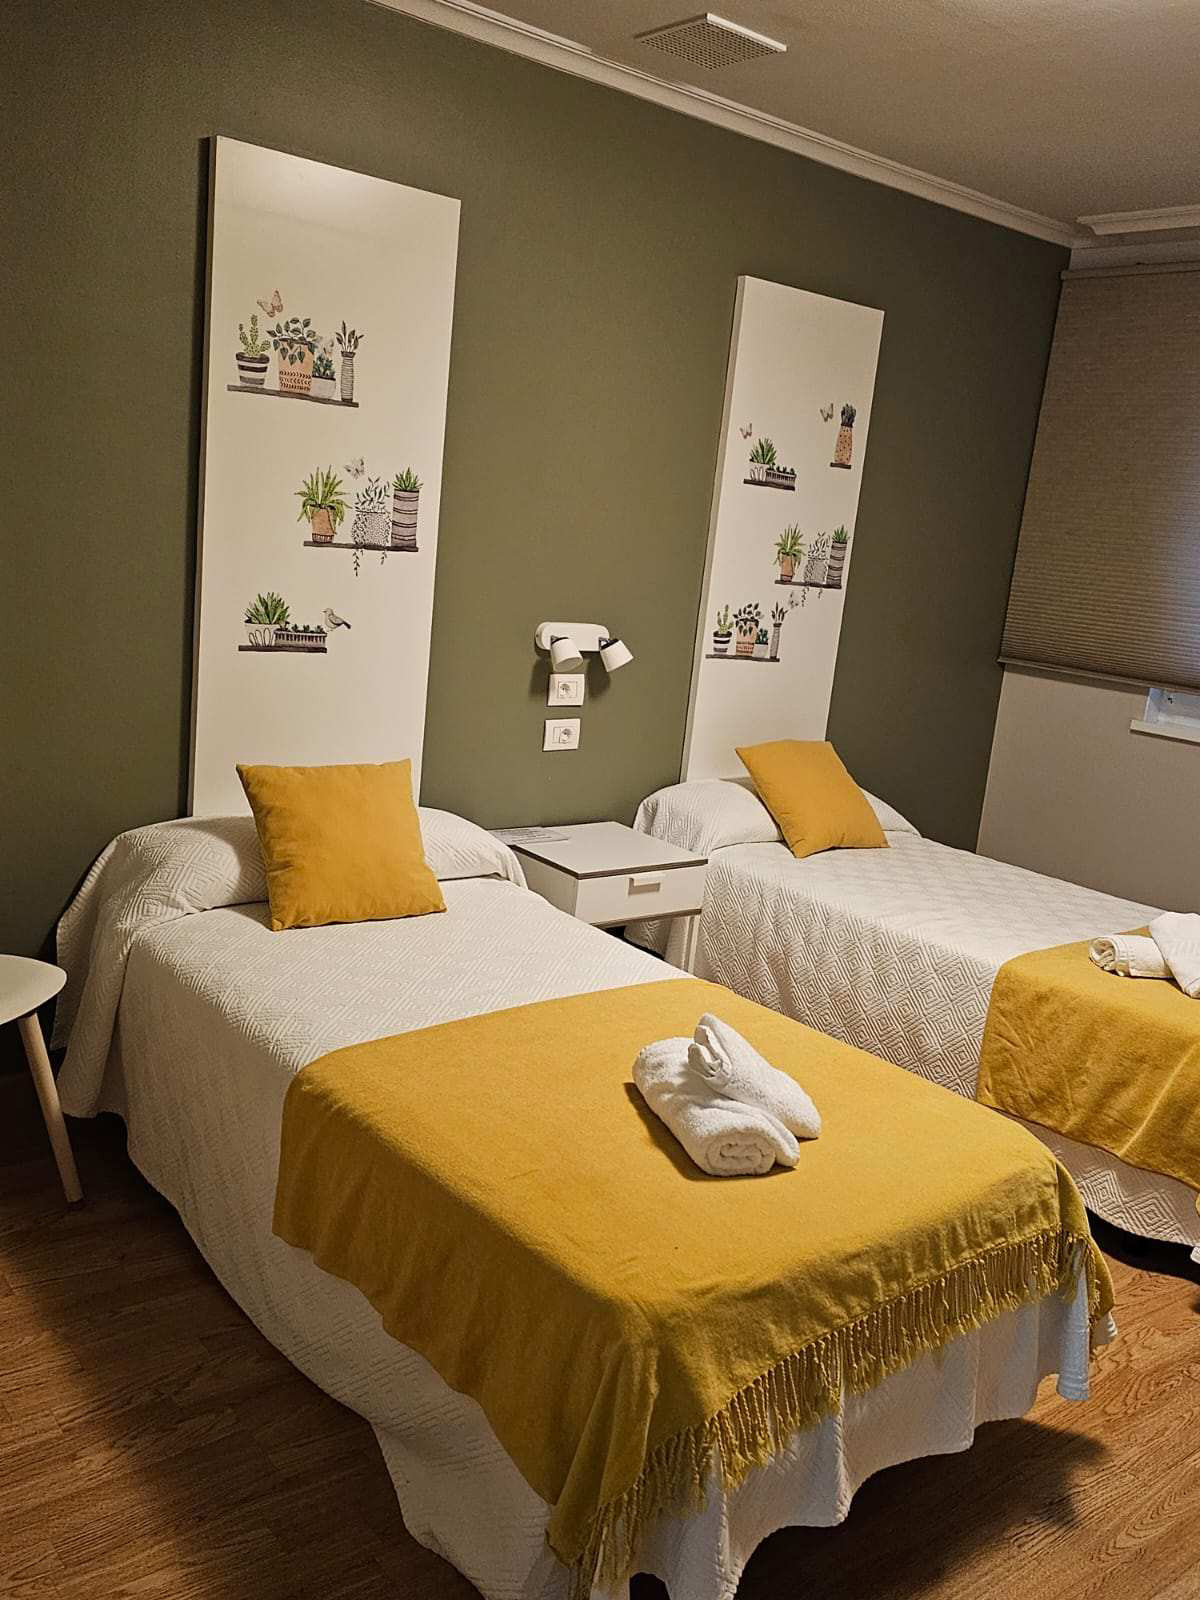 habitación doble con dos camas con mantas de color amarillo y la pared en color verde. Hay dos camas hechas con toallas en forma de muñecos encima de la misma. encima de la cama hay decoración en tonos blancos.